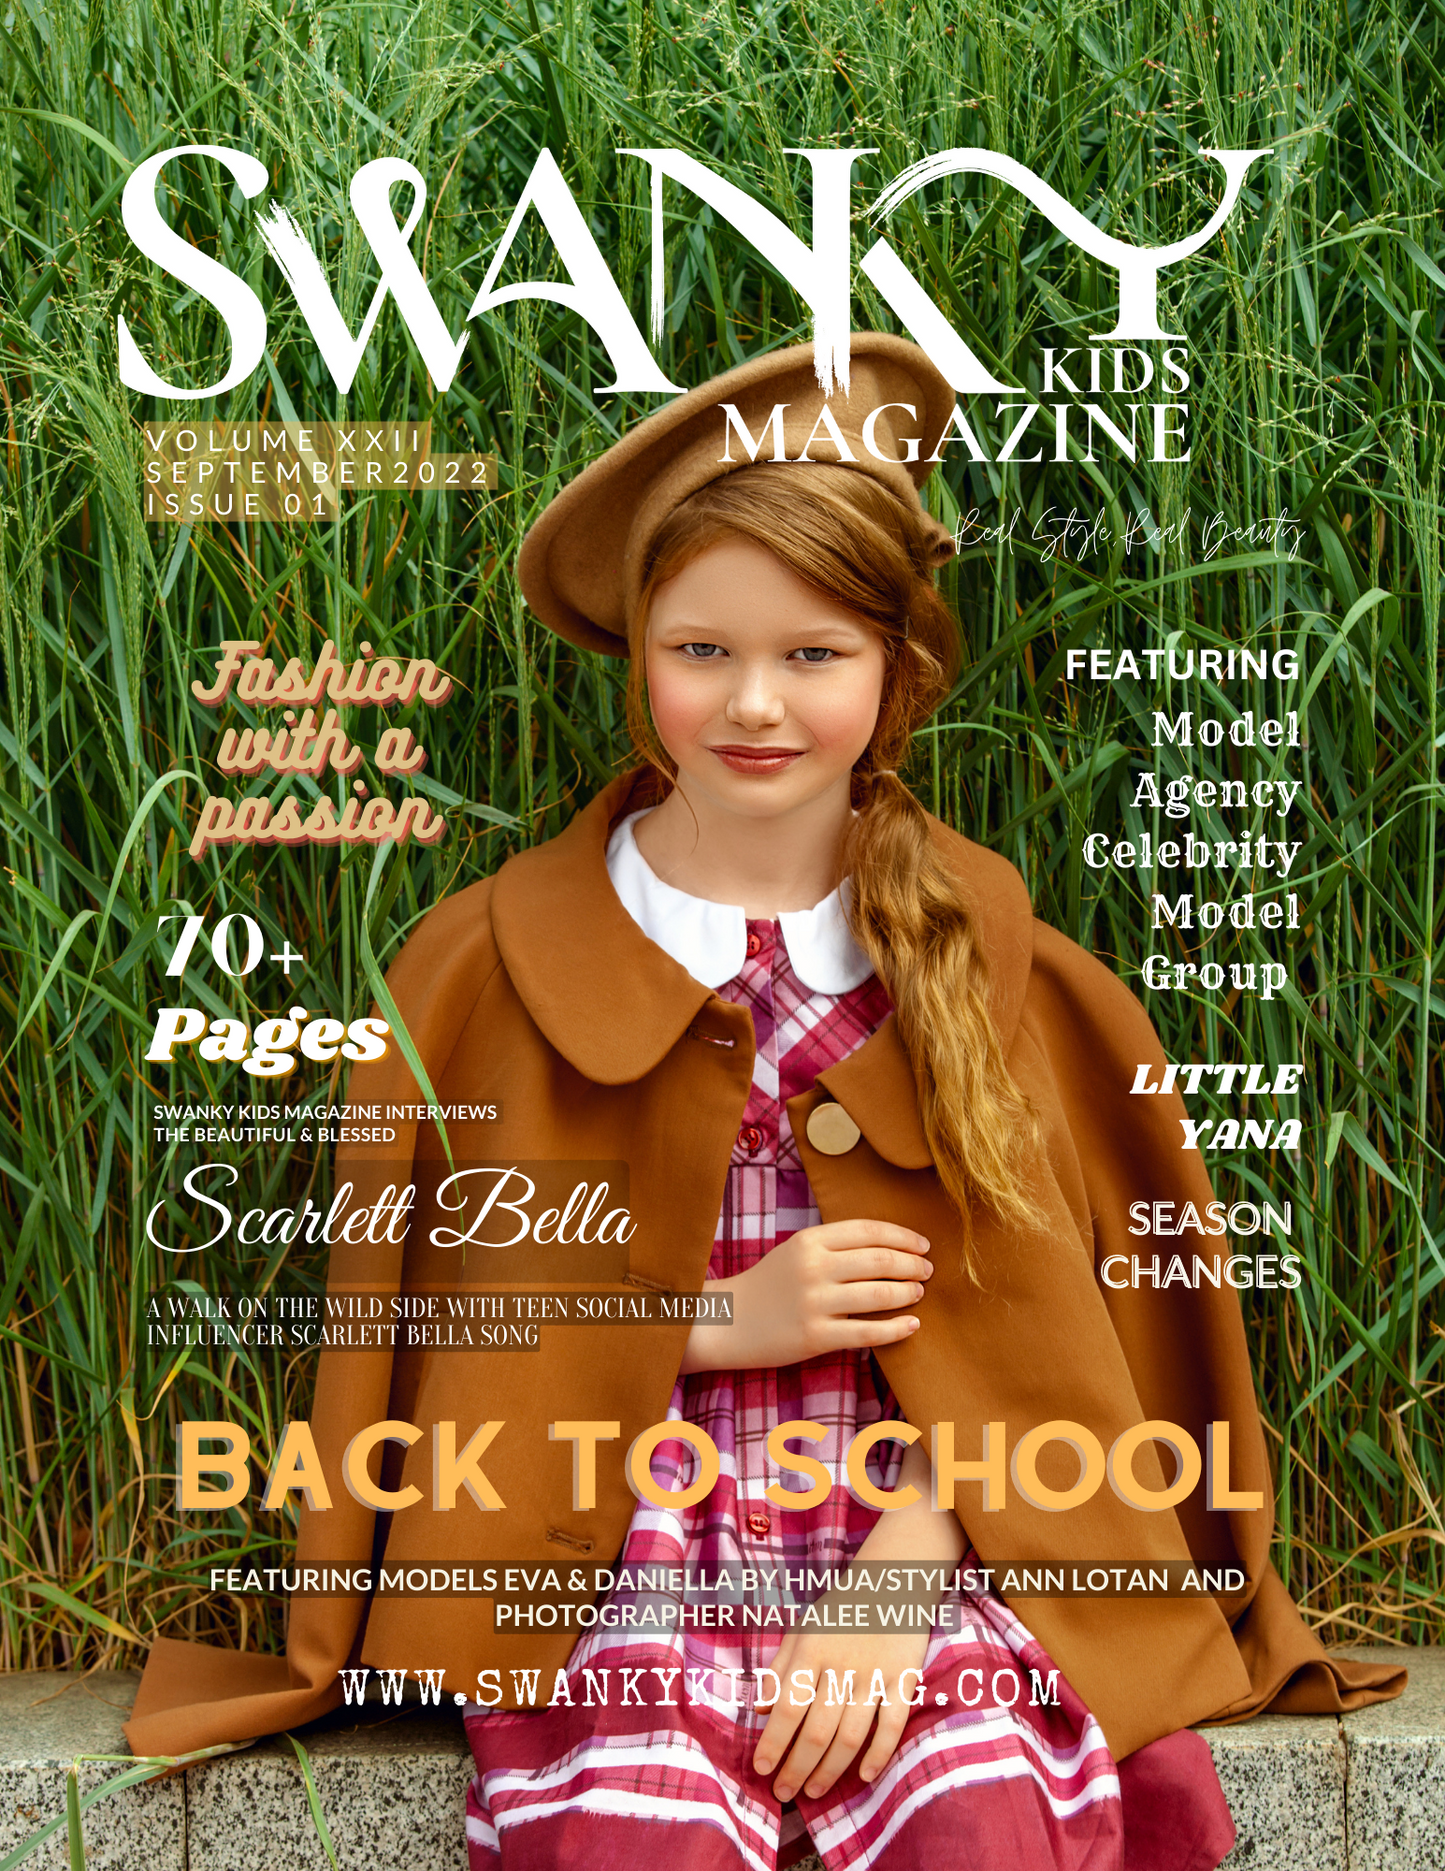 Swanky Kids Magazine September 2022 VOL XXII Issue 01